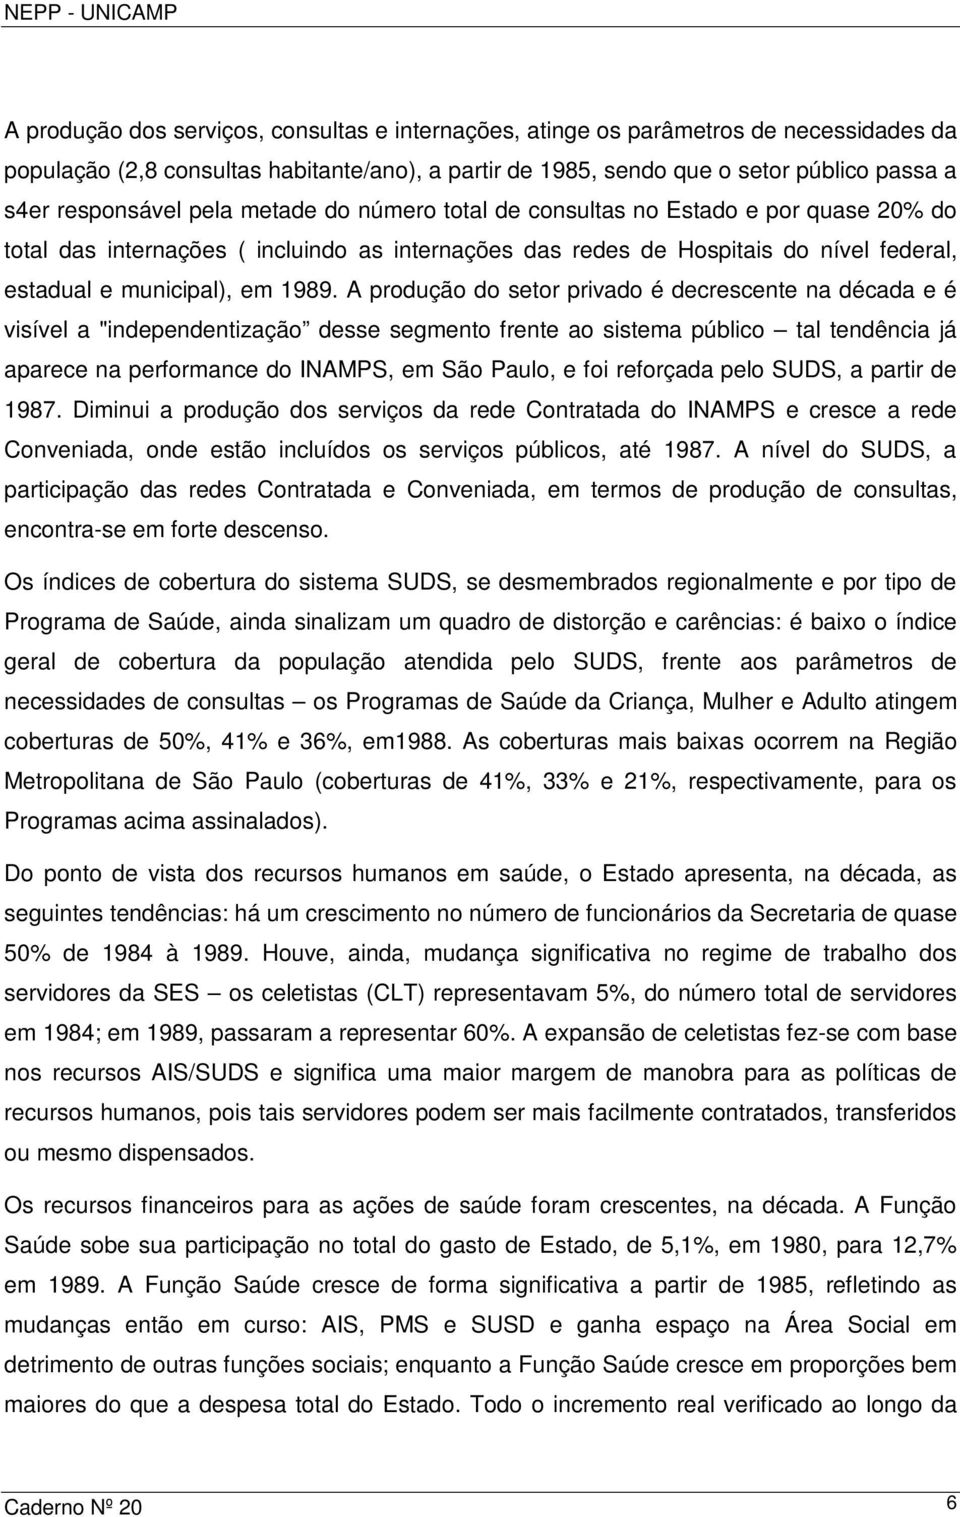 A produção do setor privado é decrescente na década e é visível a "independentização desse segmento frente ao sistema público tal tendência já aparece na performance do INAMPS, em São Paulo, e foi